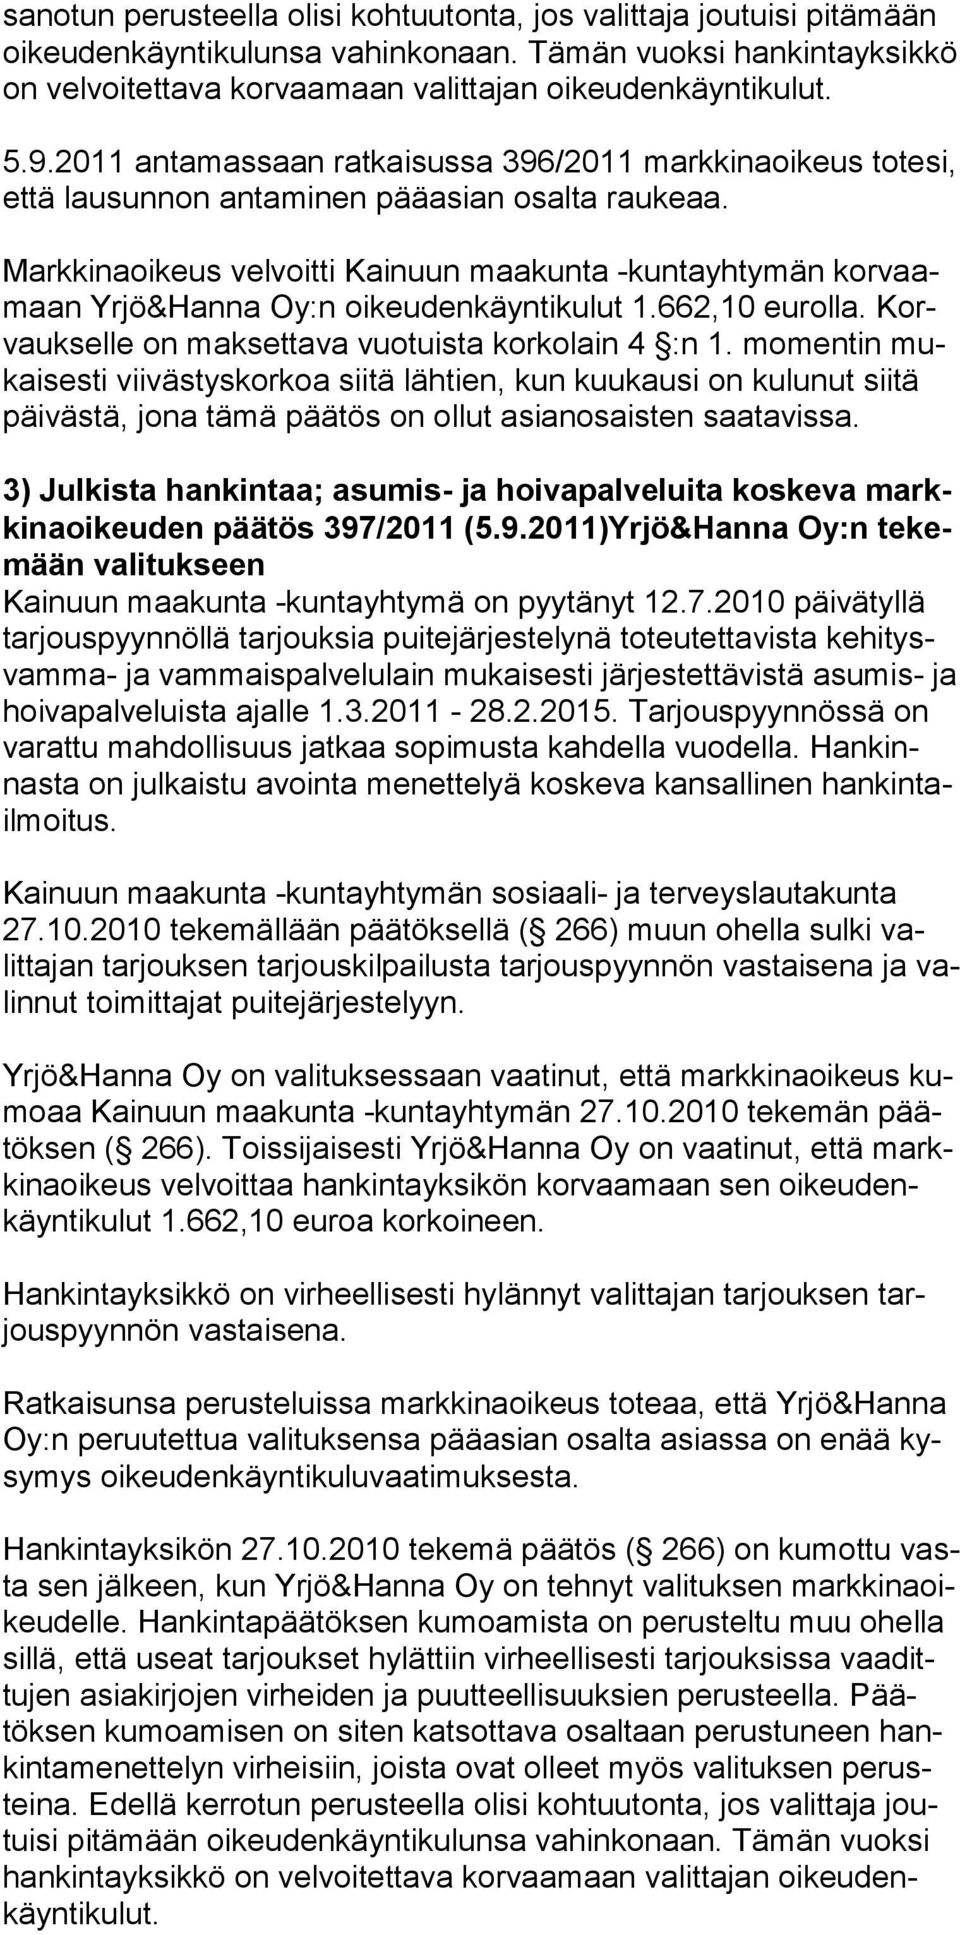 Markkinaoikeus velvoitti Kainuun maakunta -kuntayhtymän korvaamaan Yrjö&Hanna Oy:n oikeudenkäyntikulut 1.662,10 eurolla. Korvaukselle on maksettava vuotuista korkolain 4 :n 1.